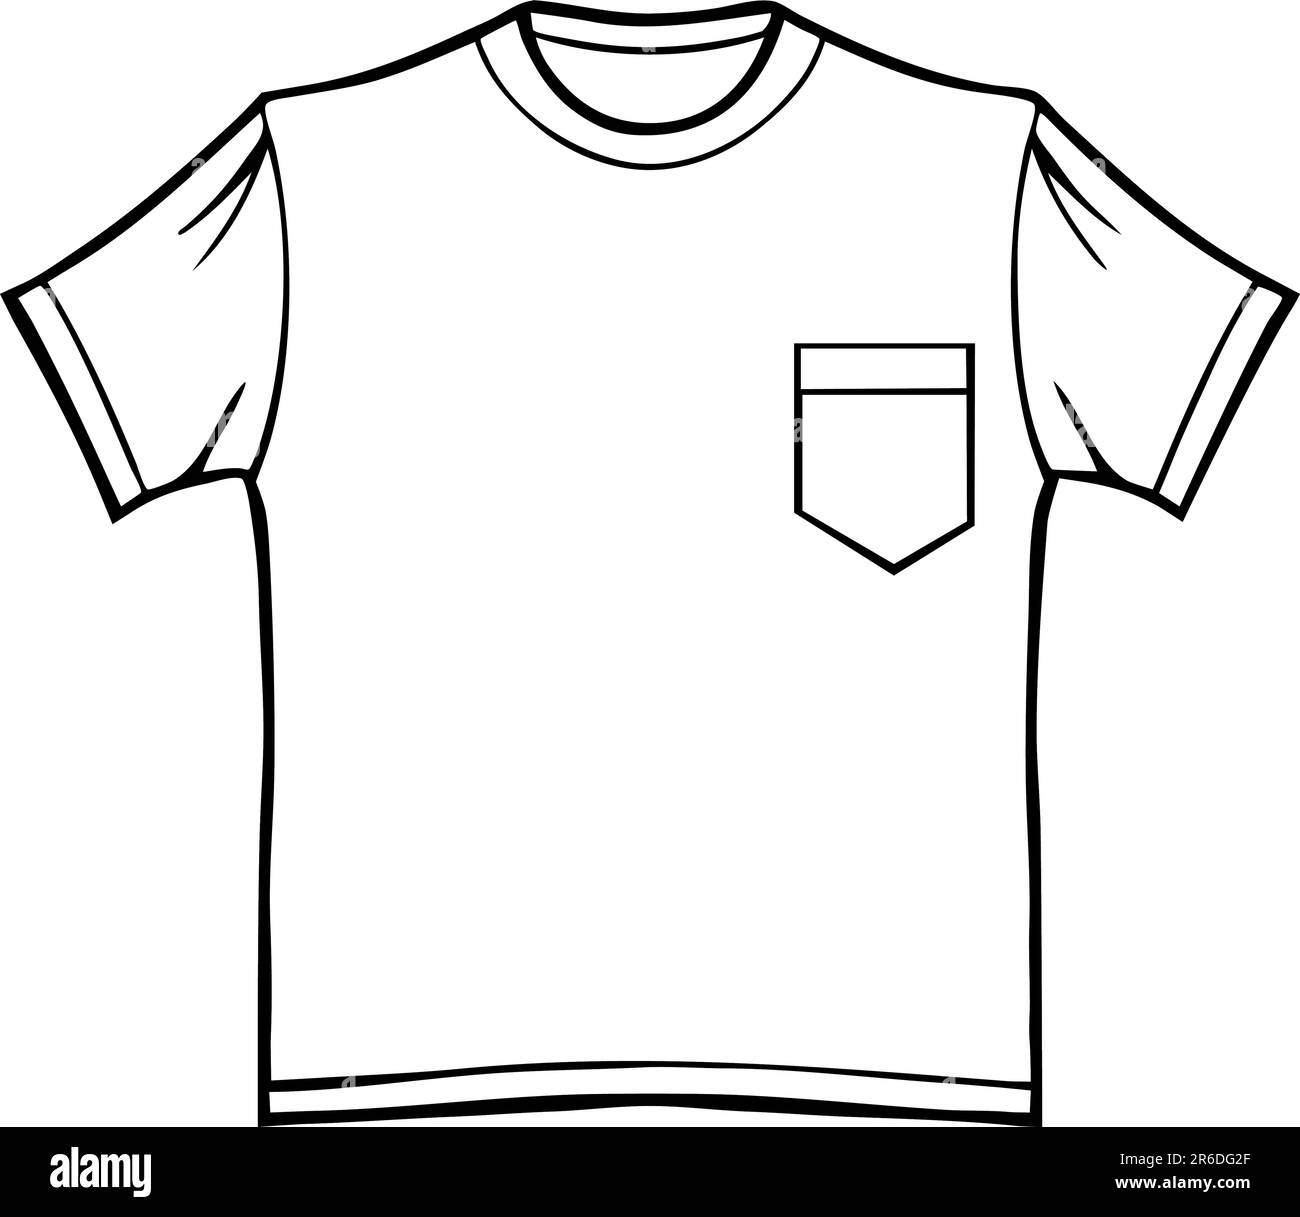 Kleidung Linie Kunst - T-shirt mit Tasche - schwarz / weiß. Stock Vektor